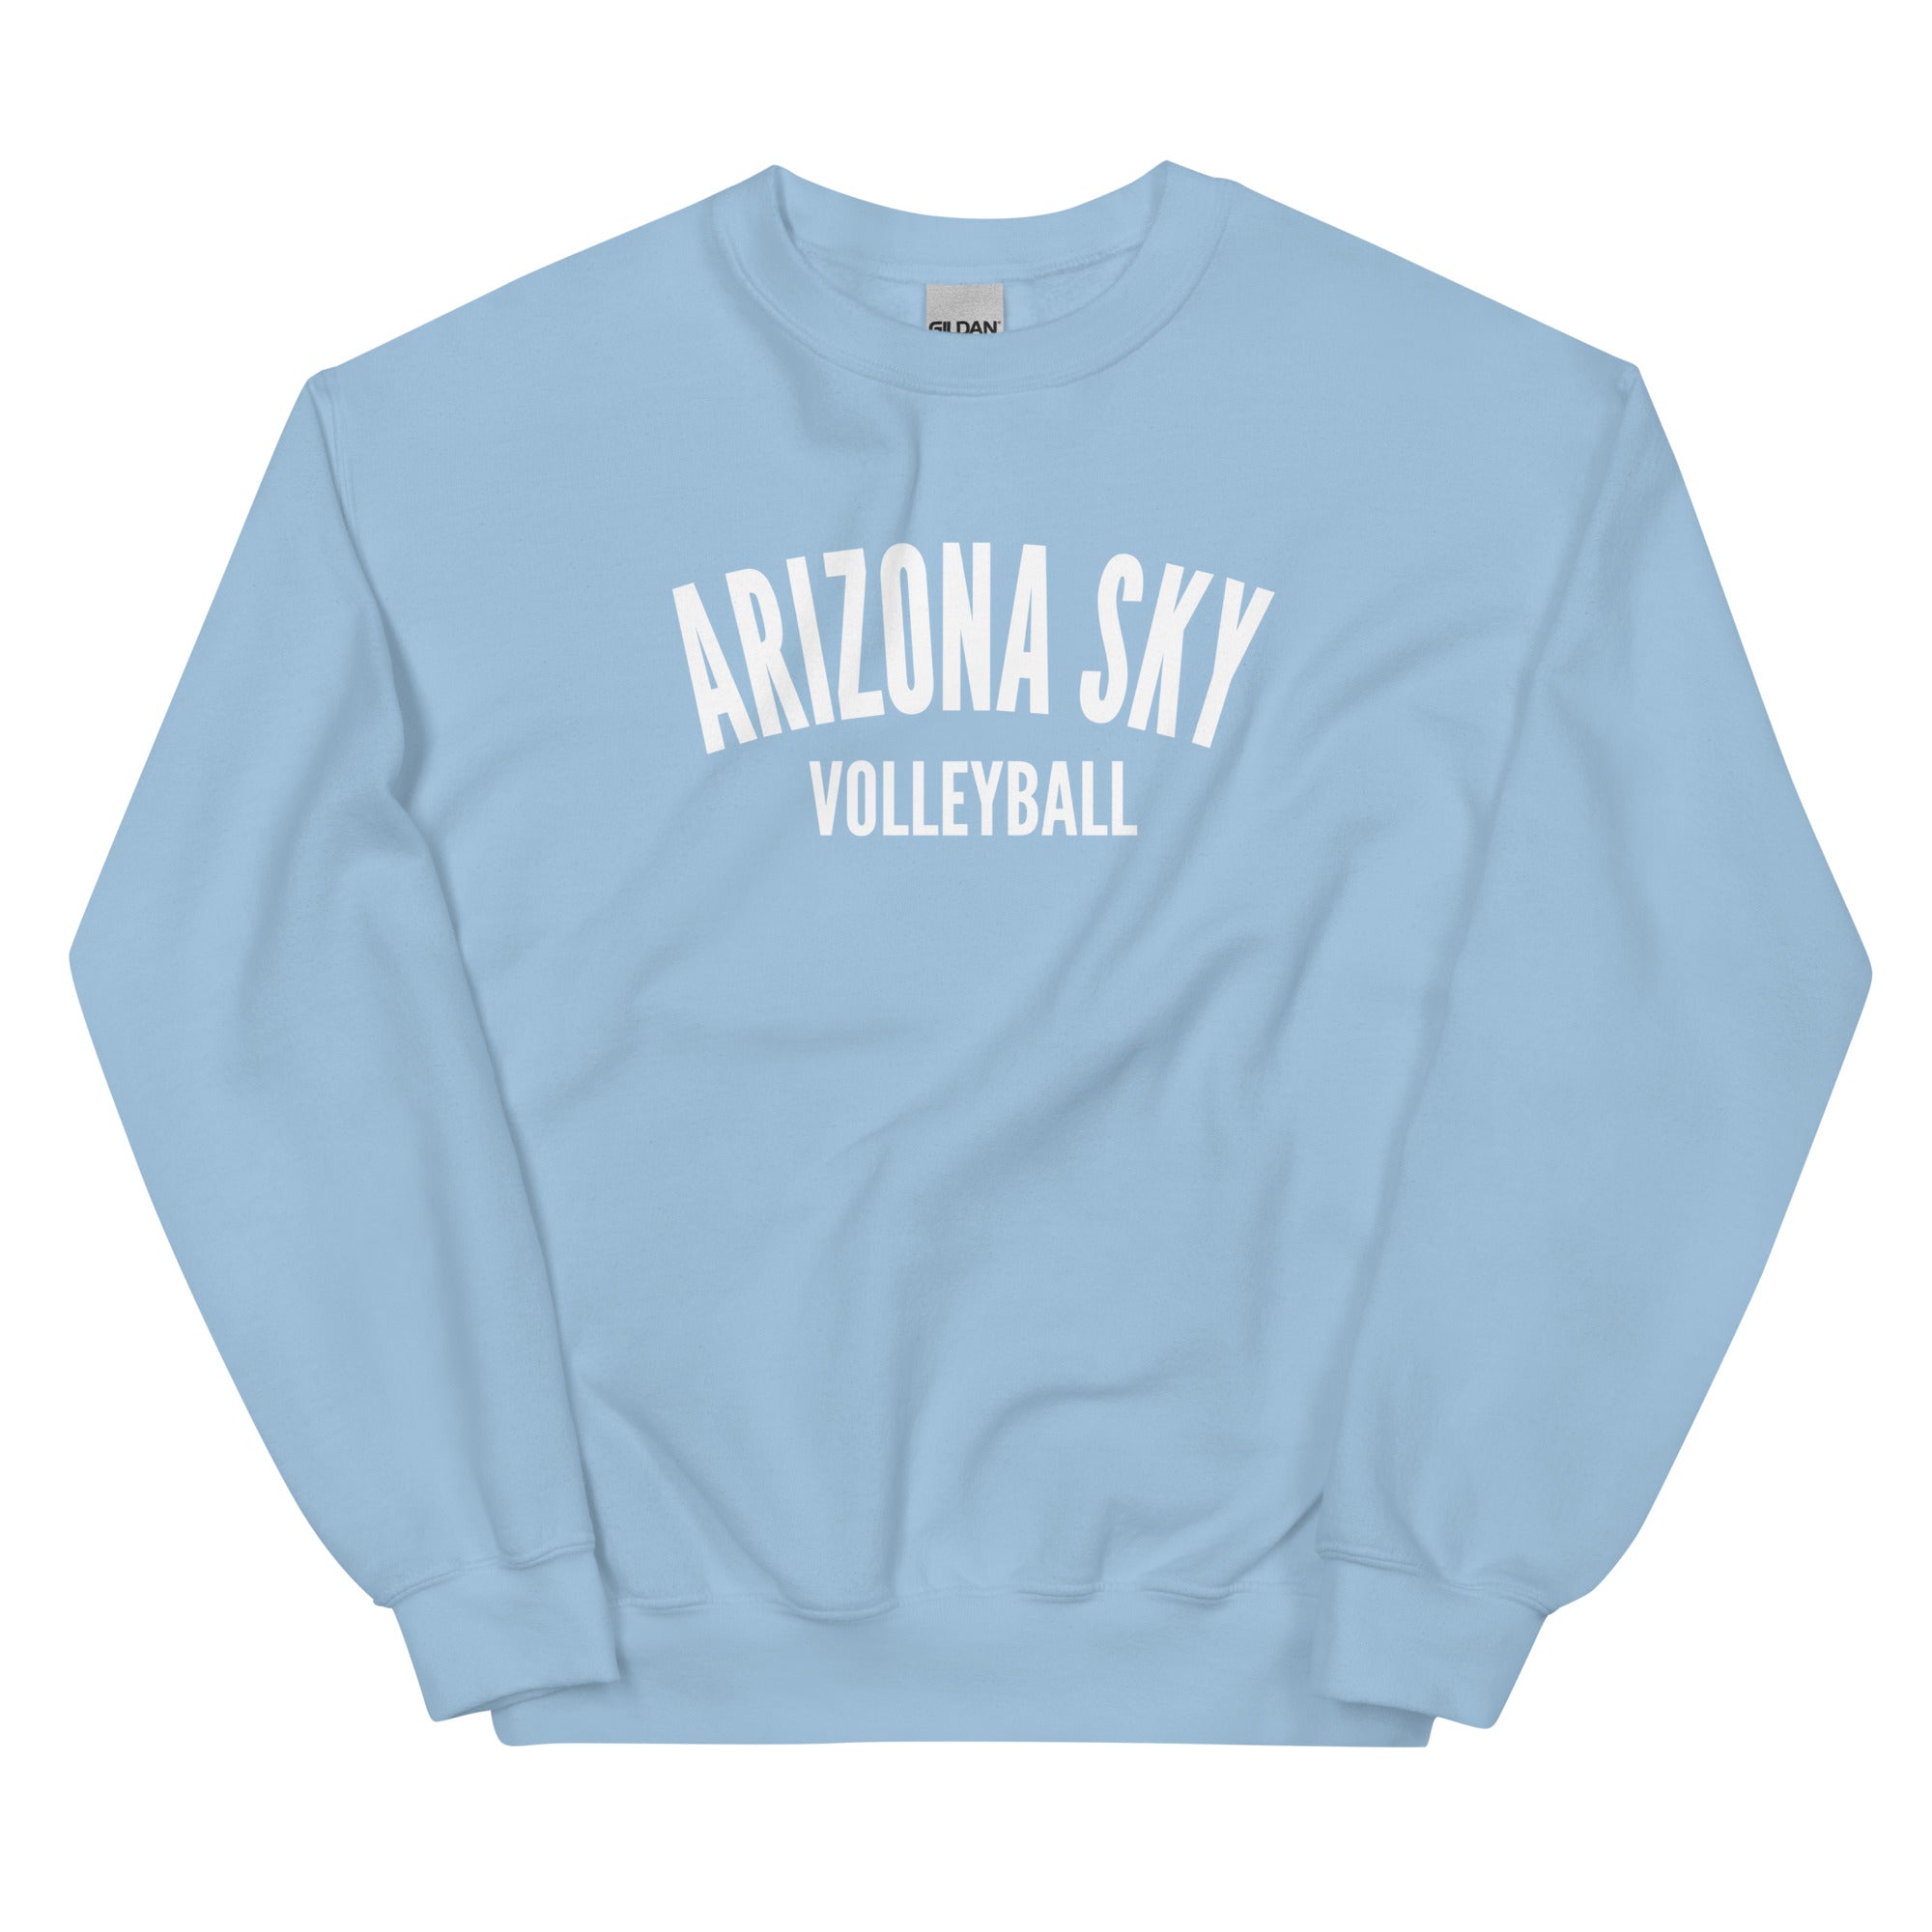 Arizona Sky Unisex Sweatshirt